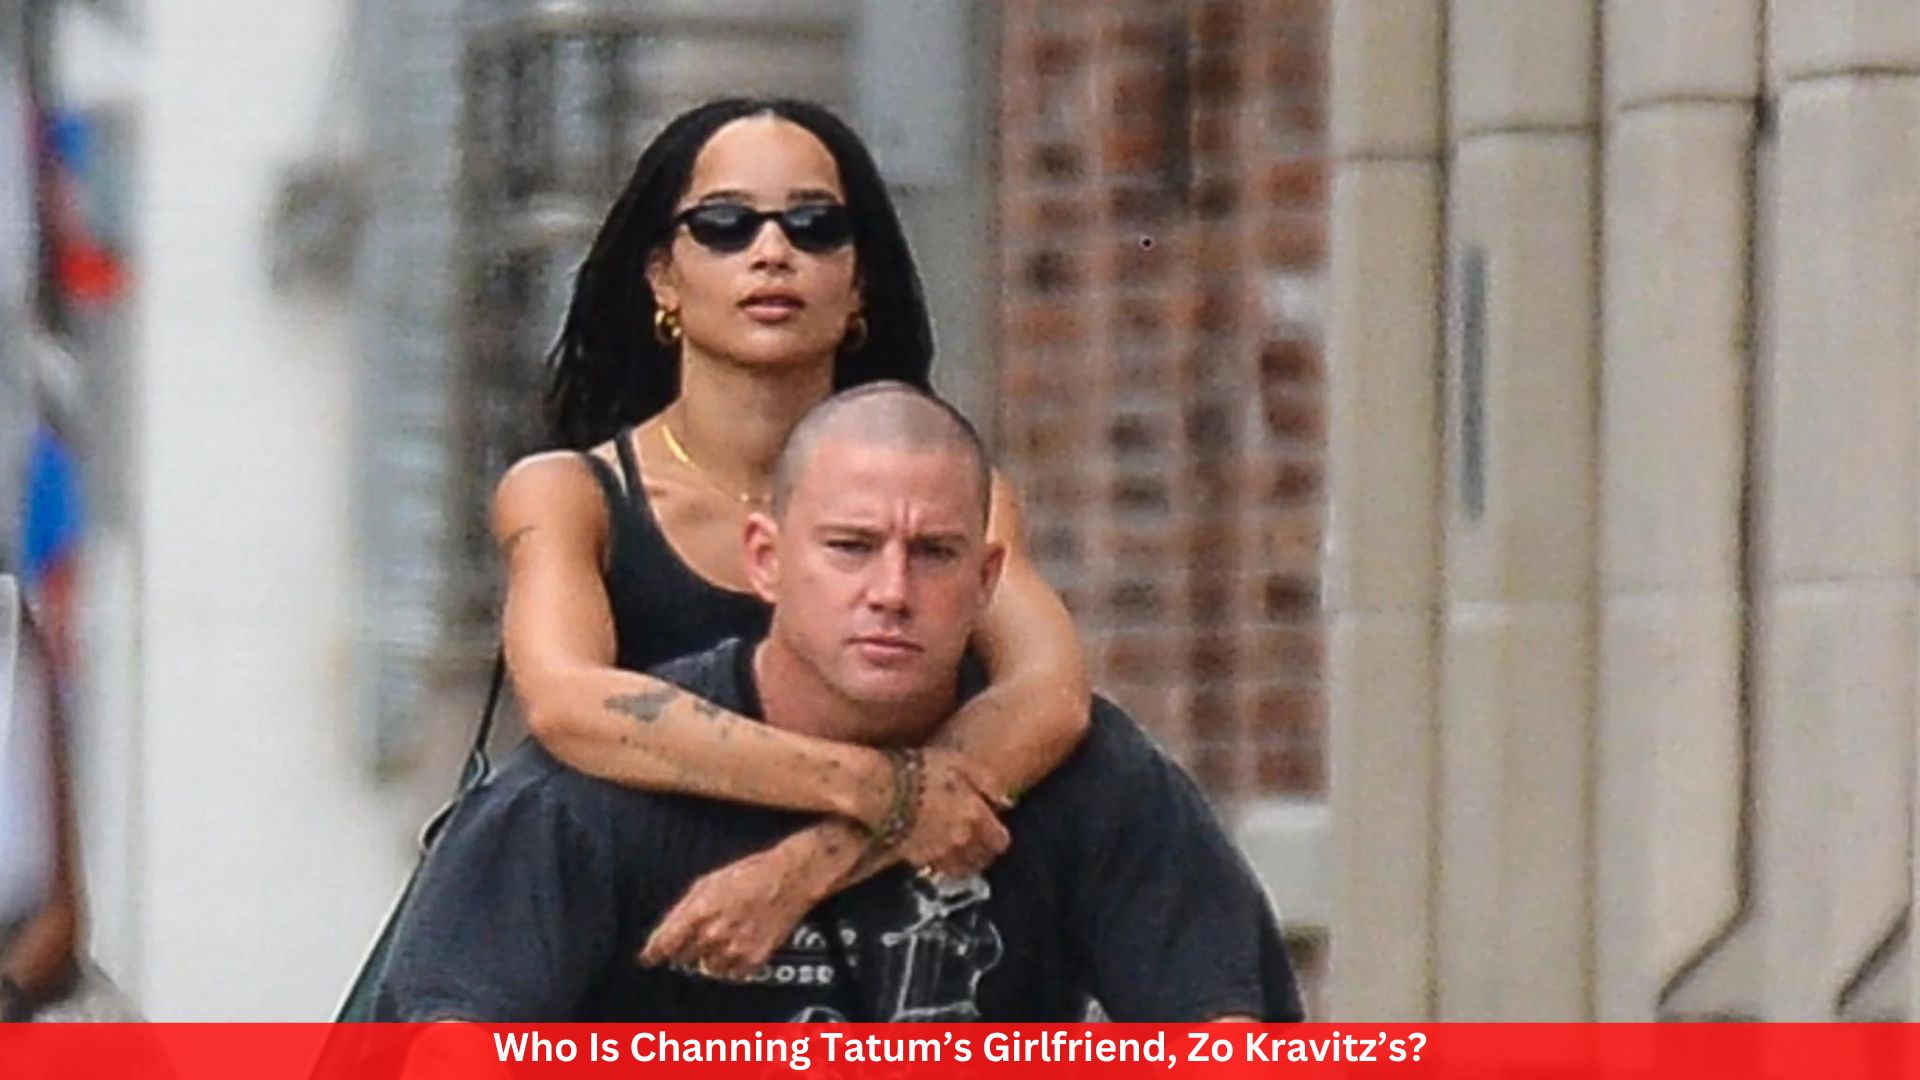 Who Is Channing Tatum’s Girlfriend, Zo Kravitz’s?